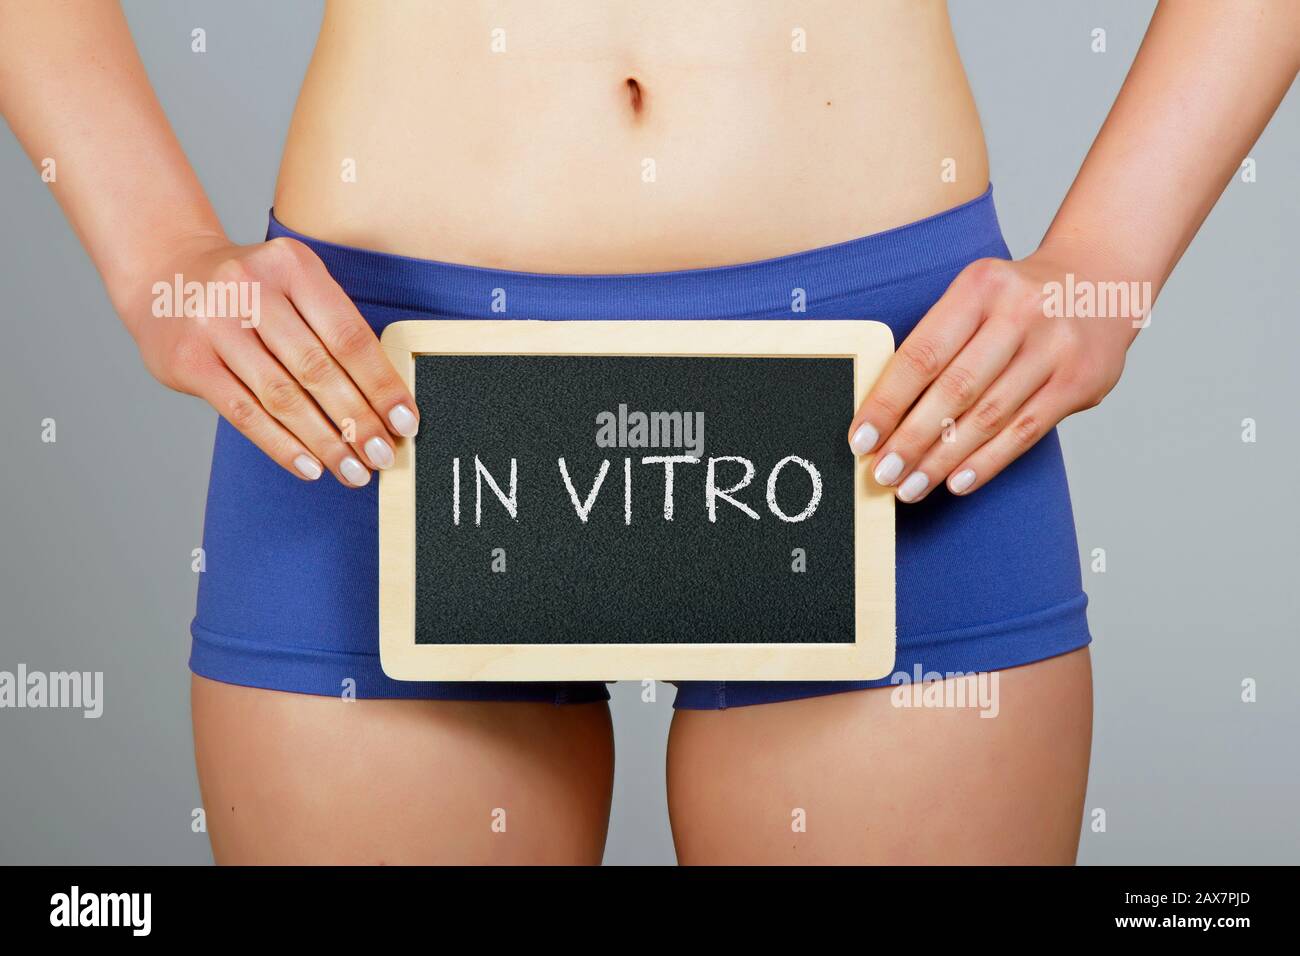 In vitro fertilization concept Stock Photo